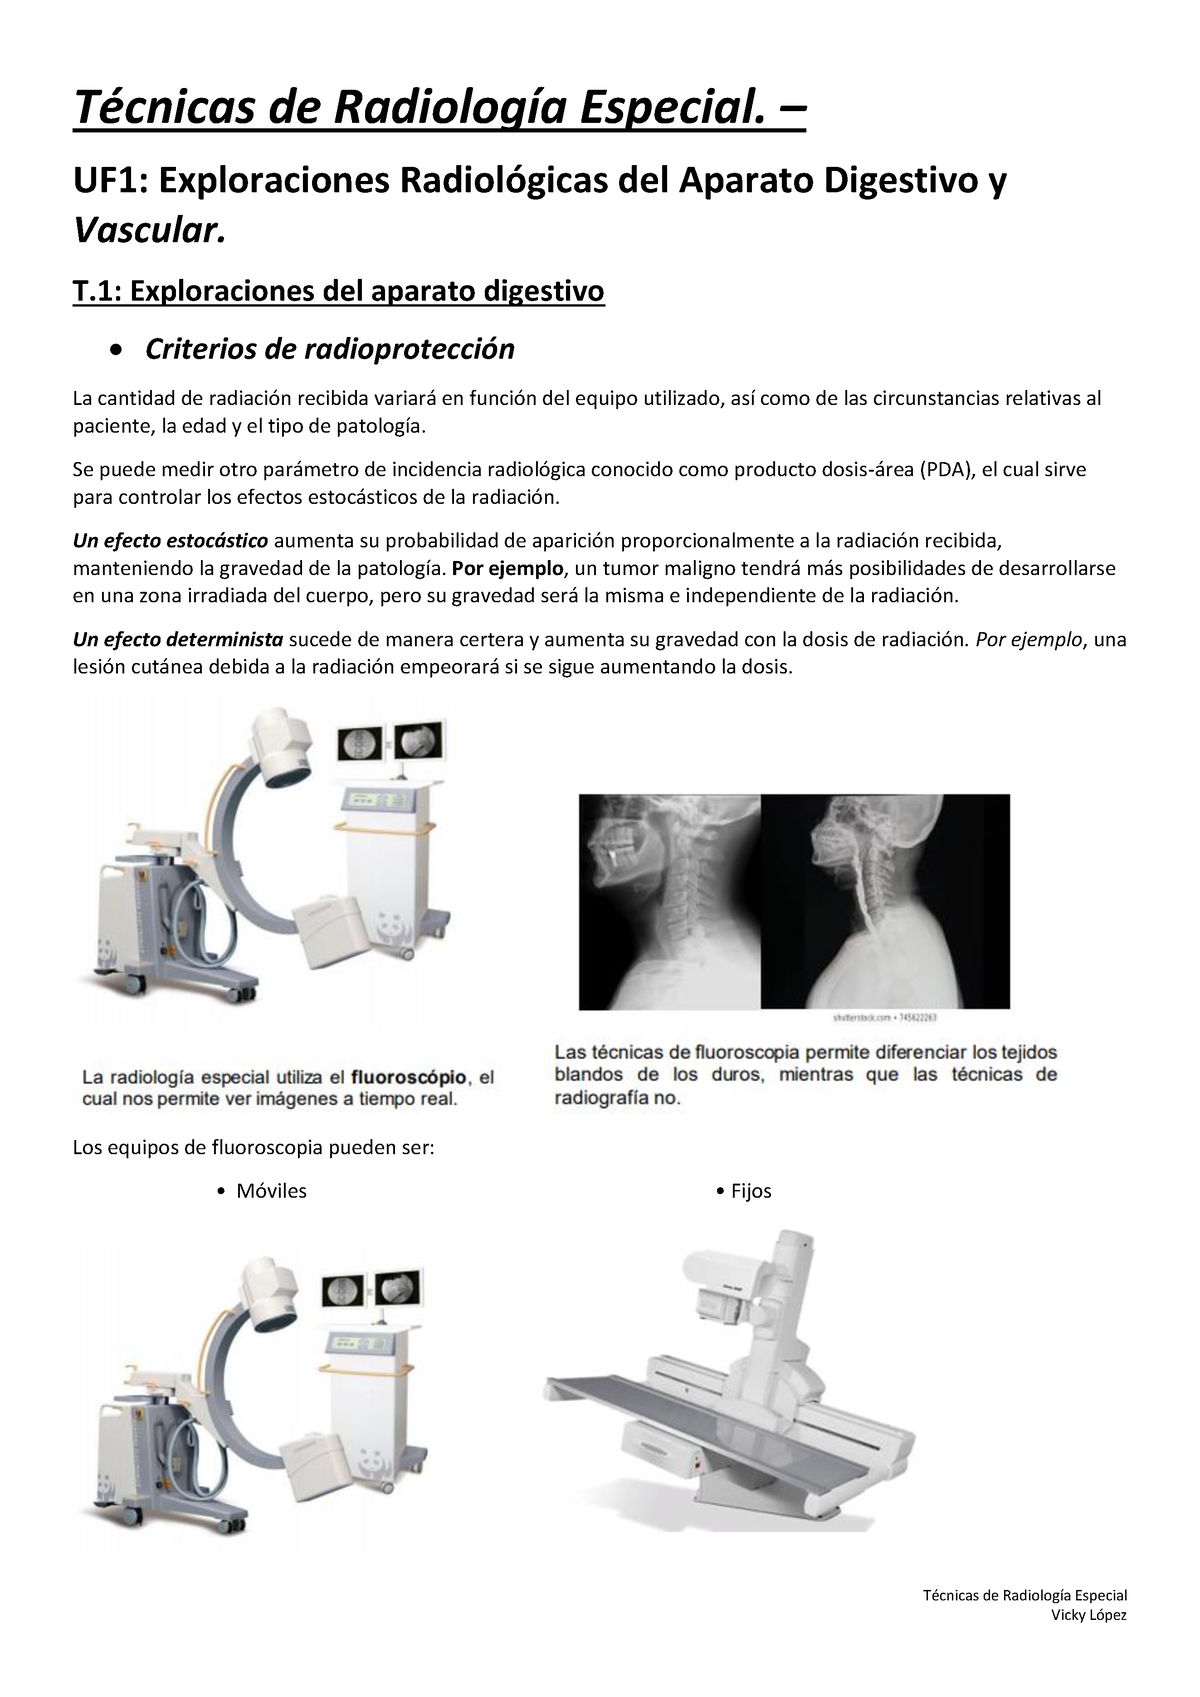 Resumen Radiologia Especial Técnicas De Radiología Especial Técnicas De Radiología Especial 5512